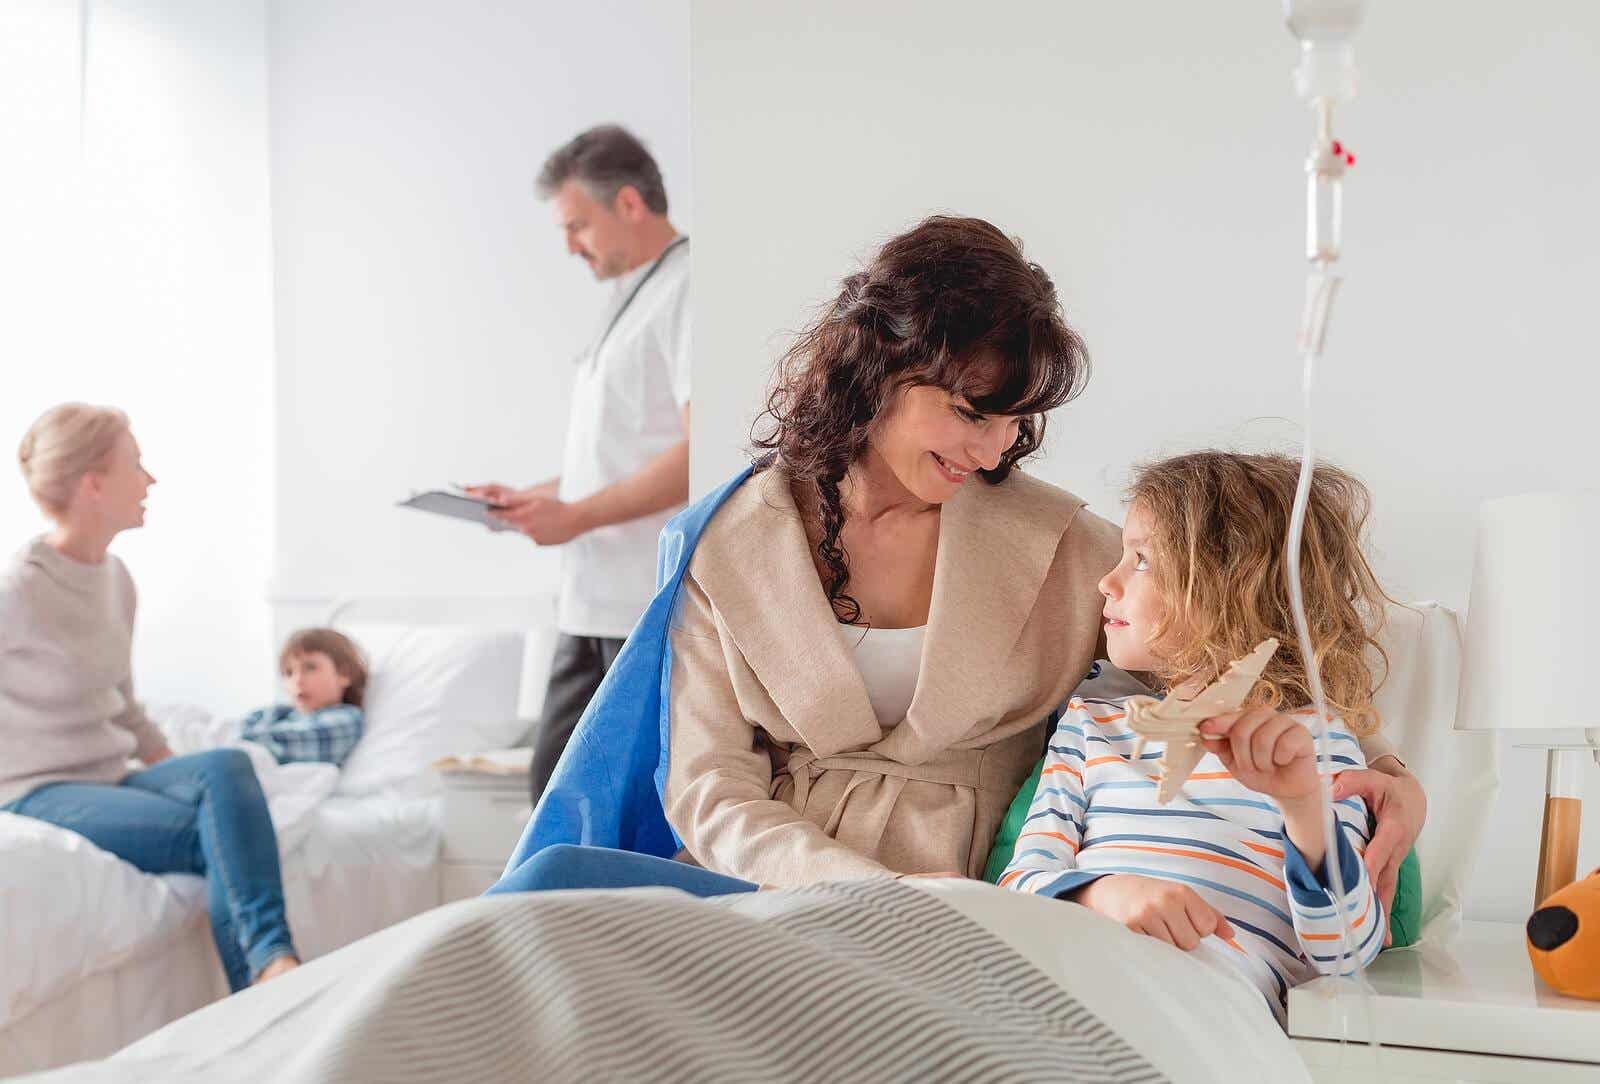 Młoda dziewczynka w szpitalnym łóżku, podłączona do kroplówki, rozmawiająca z mamą.